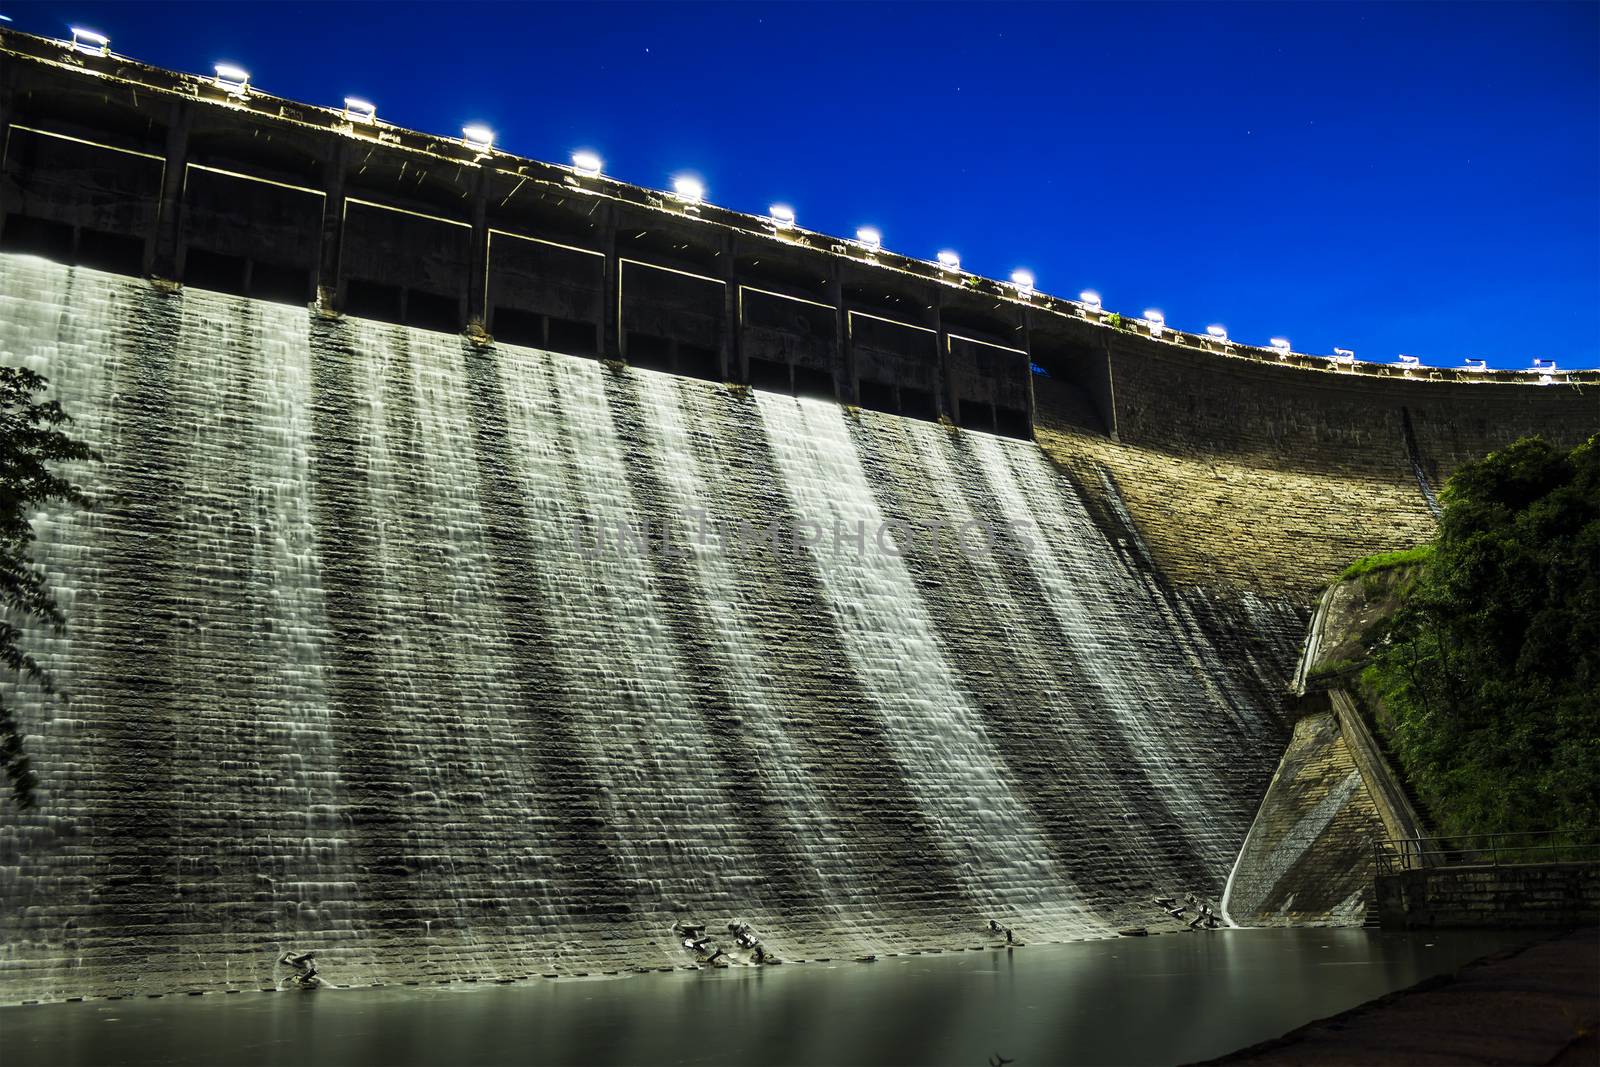 Dam at night  by kawing921